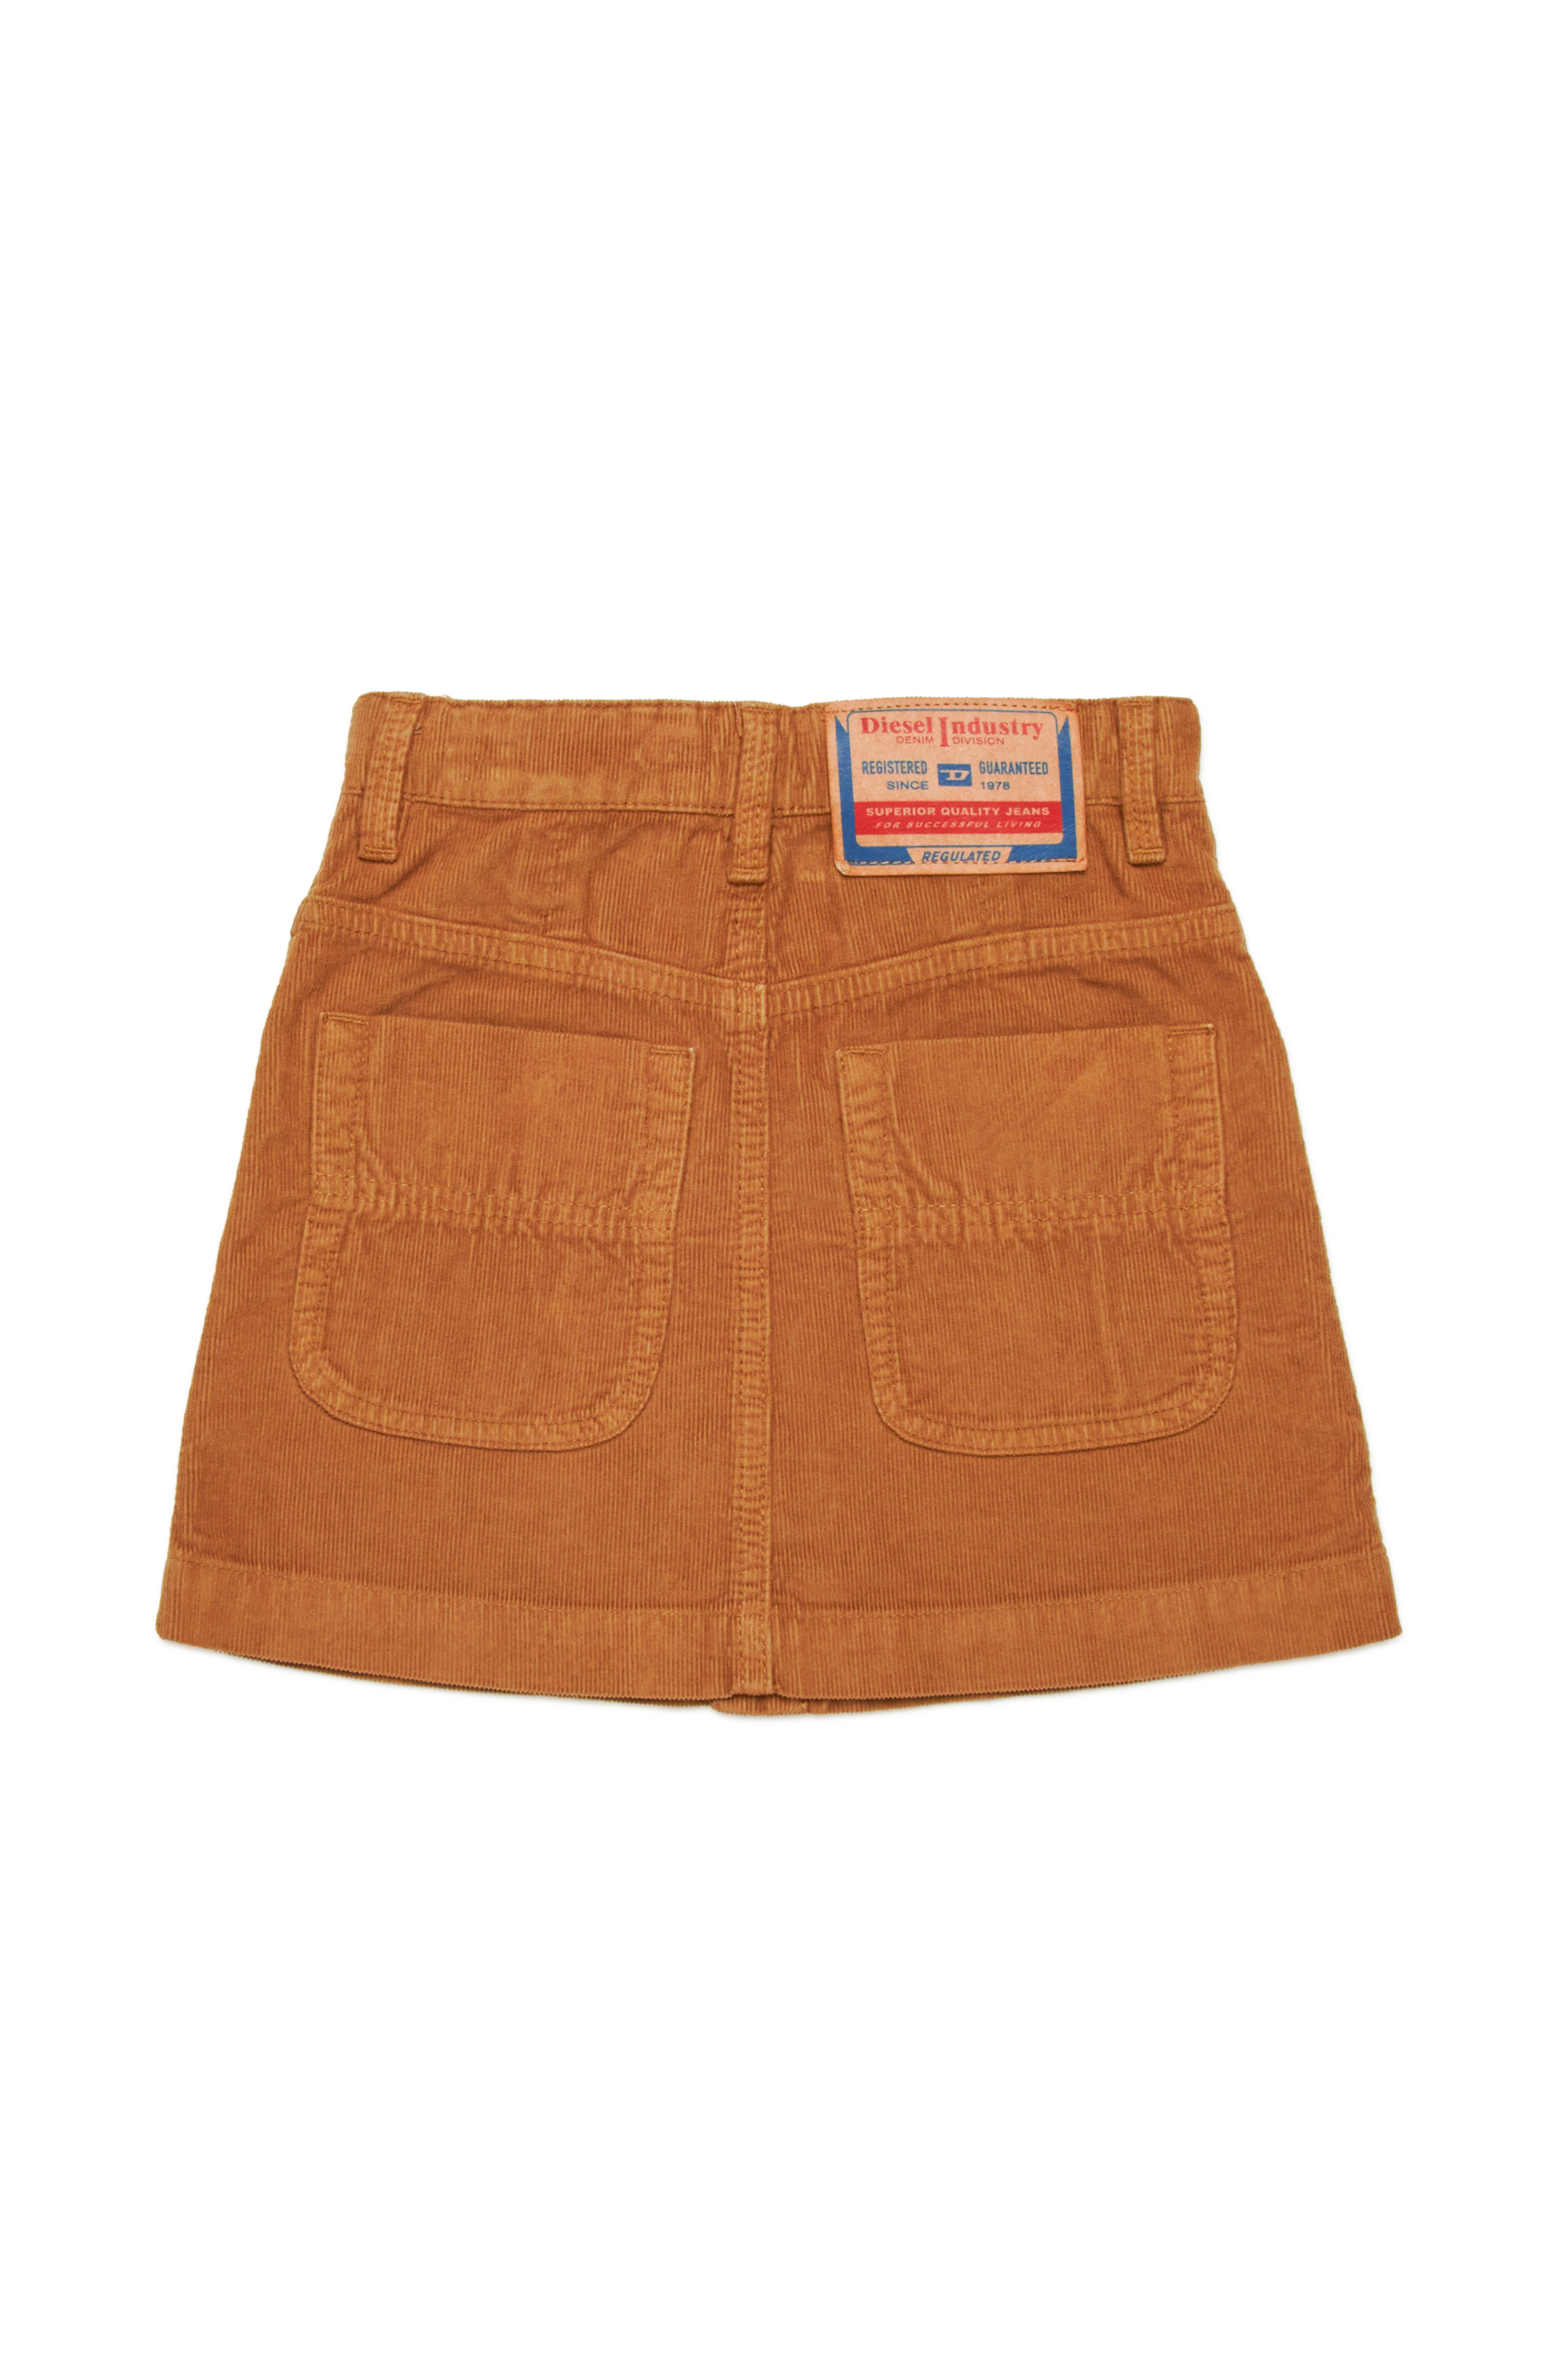 Diesel - GEALBUS, Woman 5-pocket skirt in stretch corduroy in Brown - Image 2